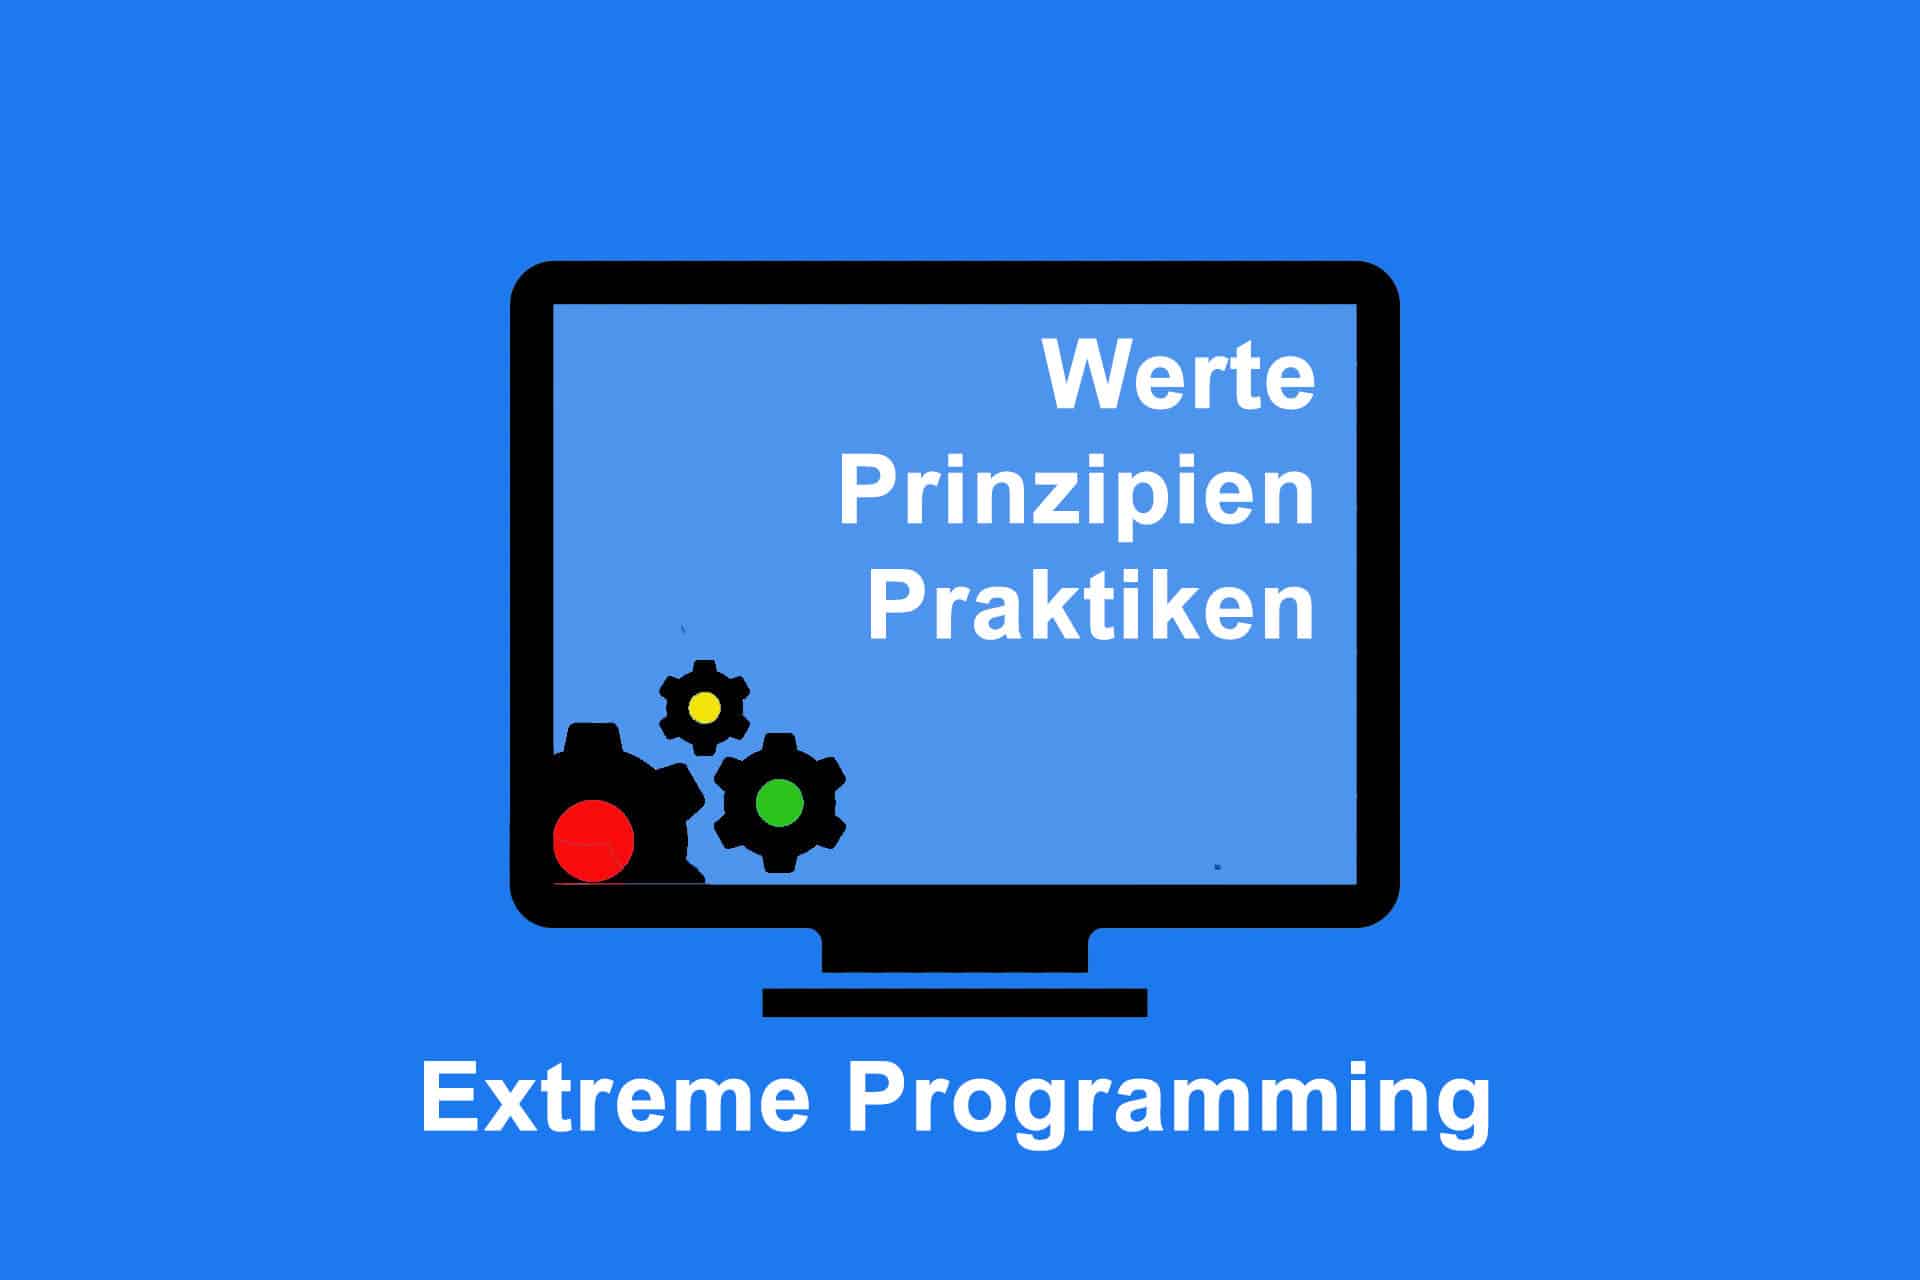 Extreme Programming - ein Zusammenwirken von Werten, Prinzipien und Praktiken